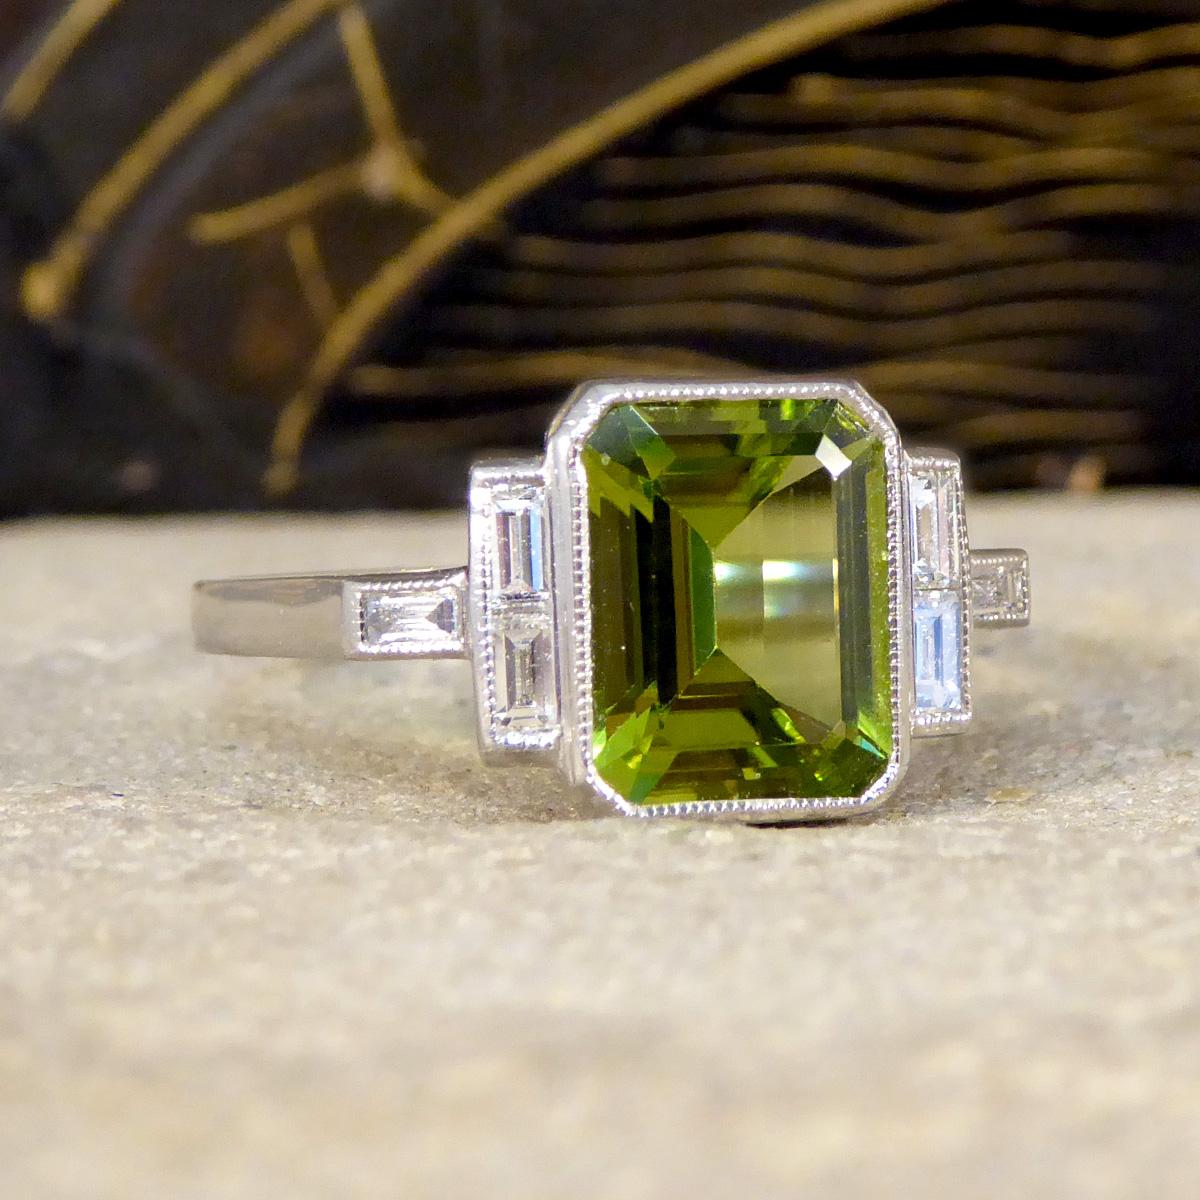 Unser vom Art Deco inspirierter Peridot-Ring ist eine harmonische Mischung aus Vintage-Eleganz und zeitgenössischem Flair. Dieser Ring ist in Platin gefasst und trägt als Herzstück einen leuchtenden Peridot im Smaragdschliff mit einem Gewicht von